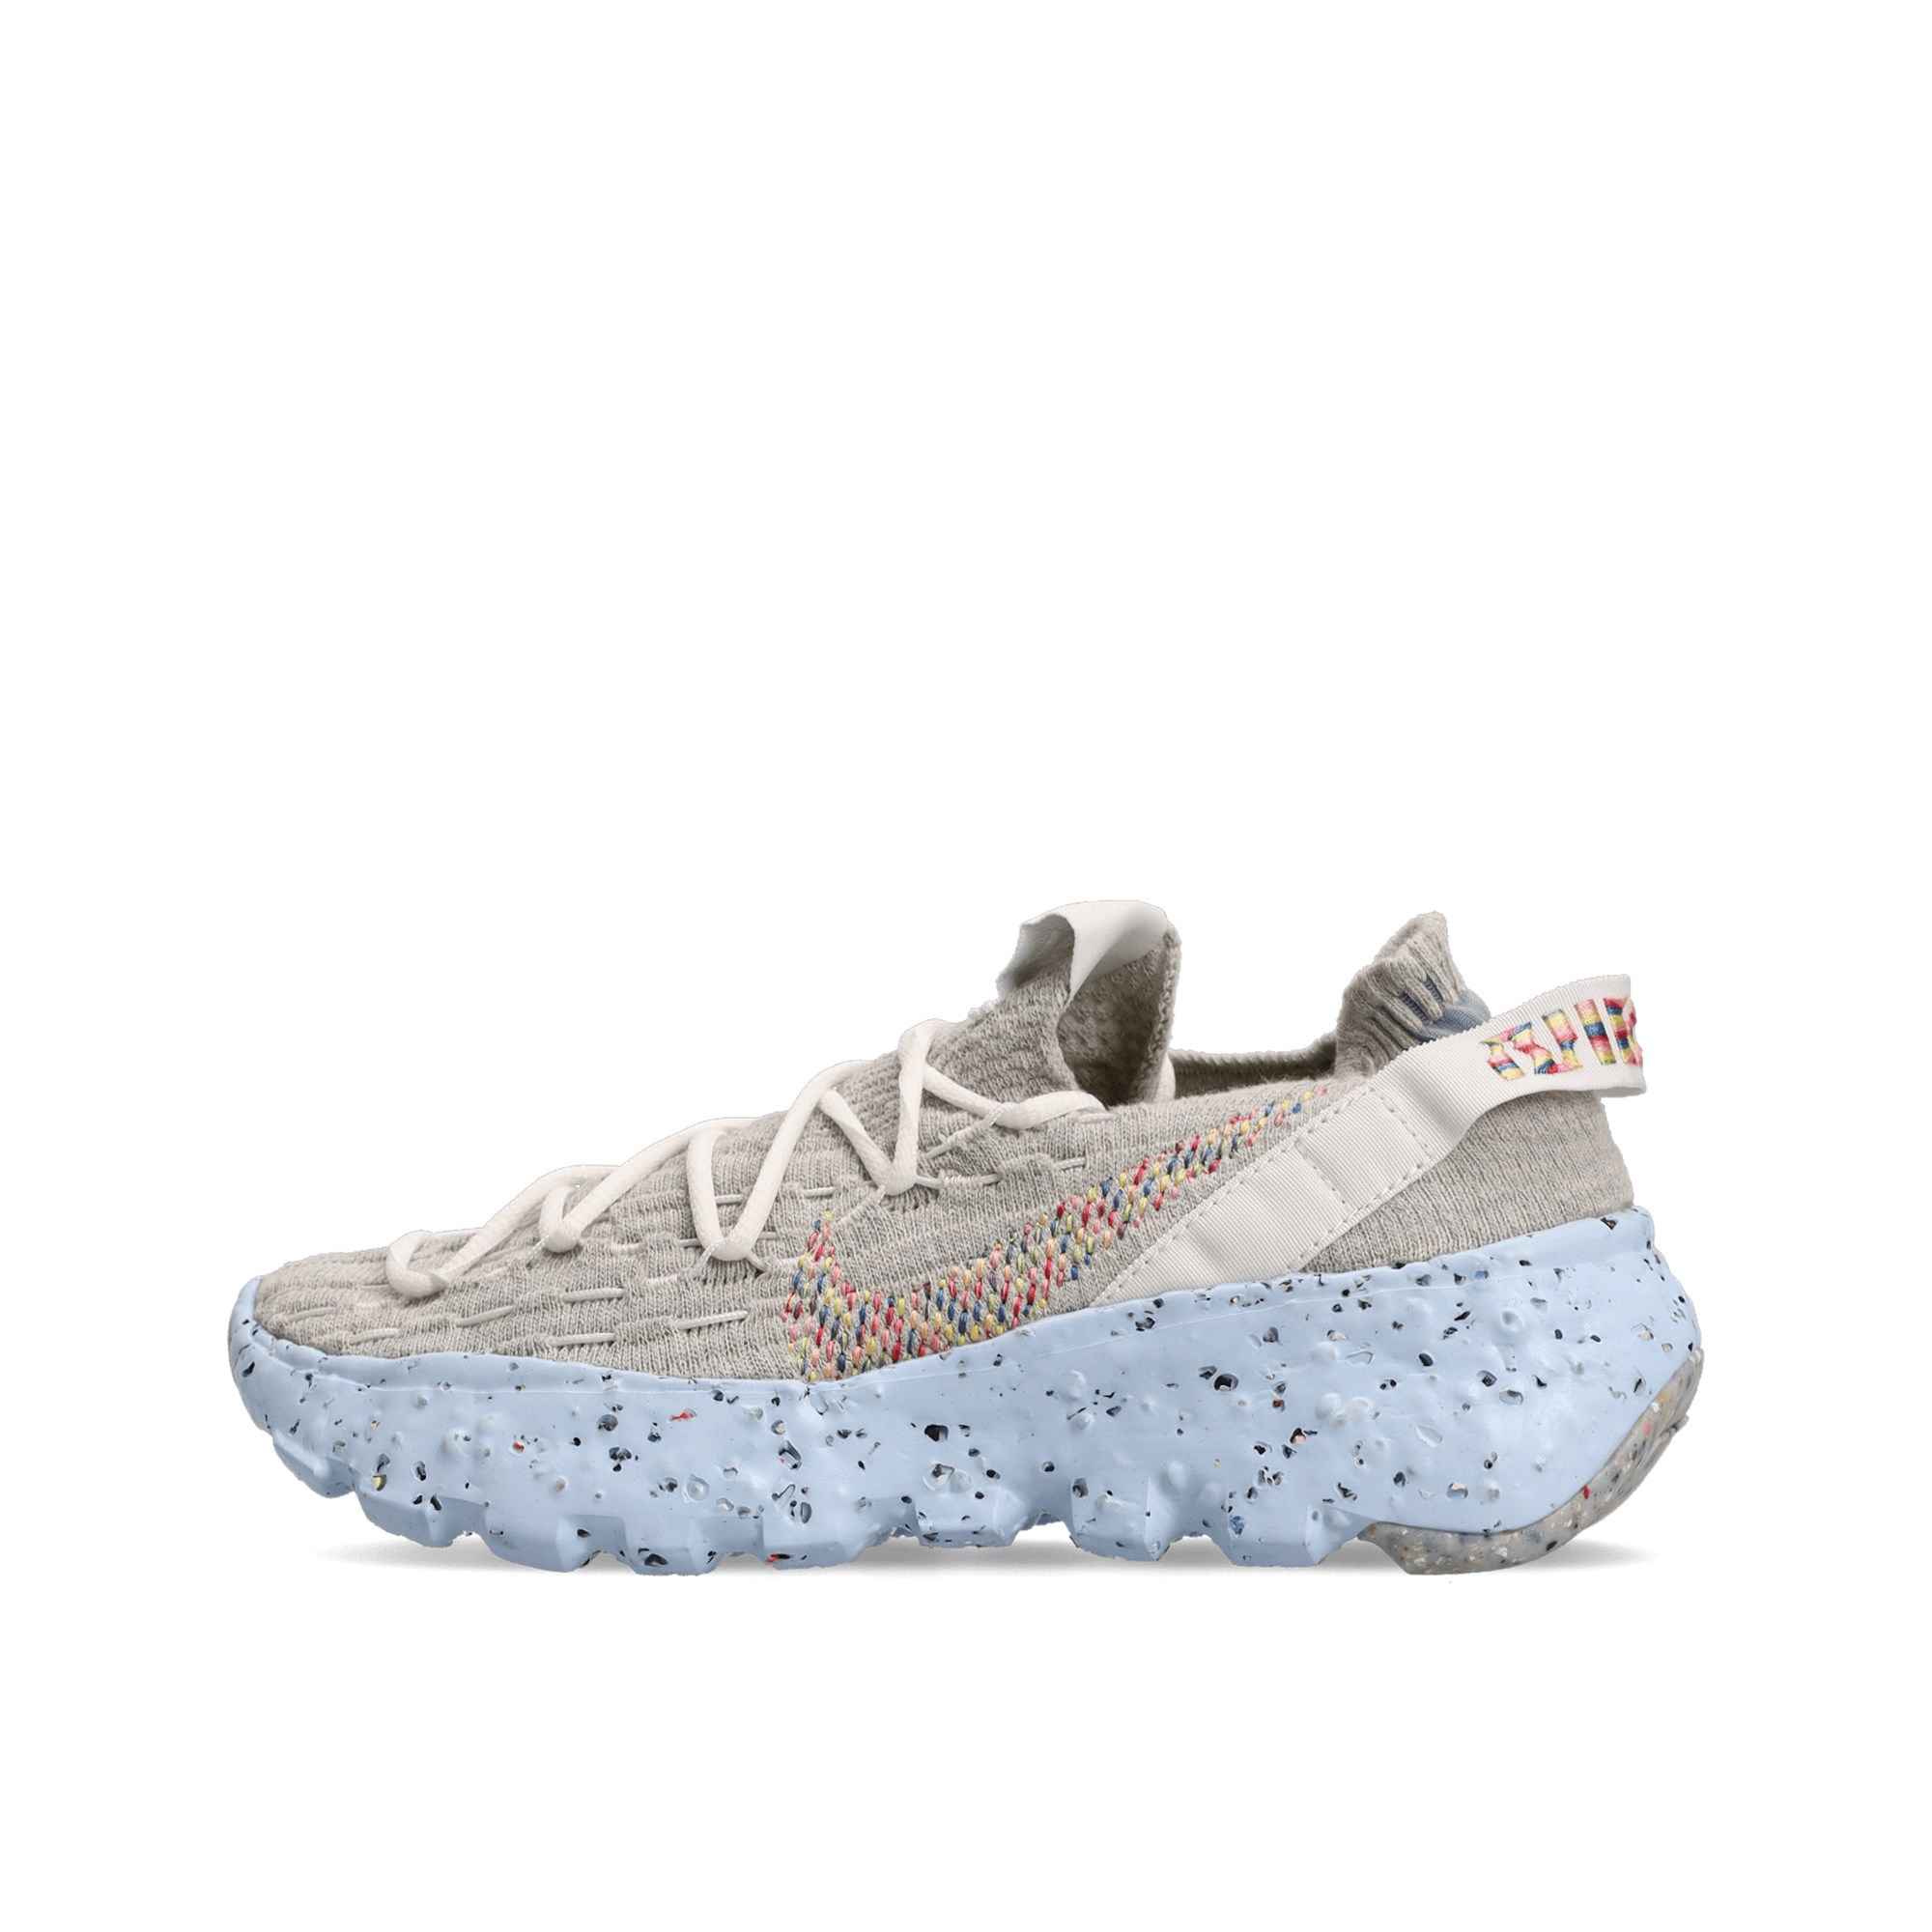 Nike – Space Hippie 04 Move to Zero – Sneaker in Summit-Weiß-Grau günstig online kaufen